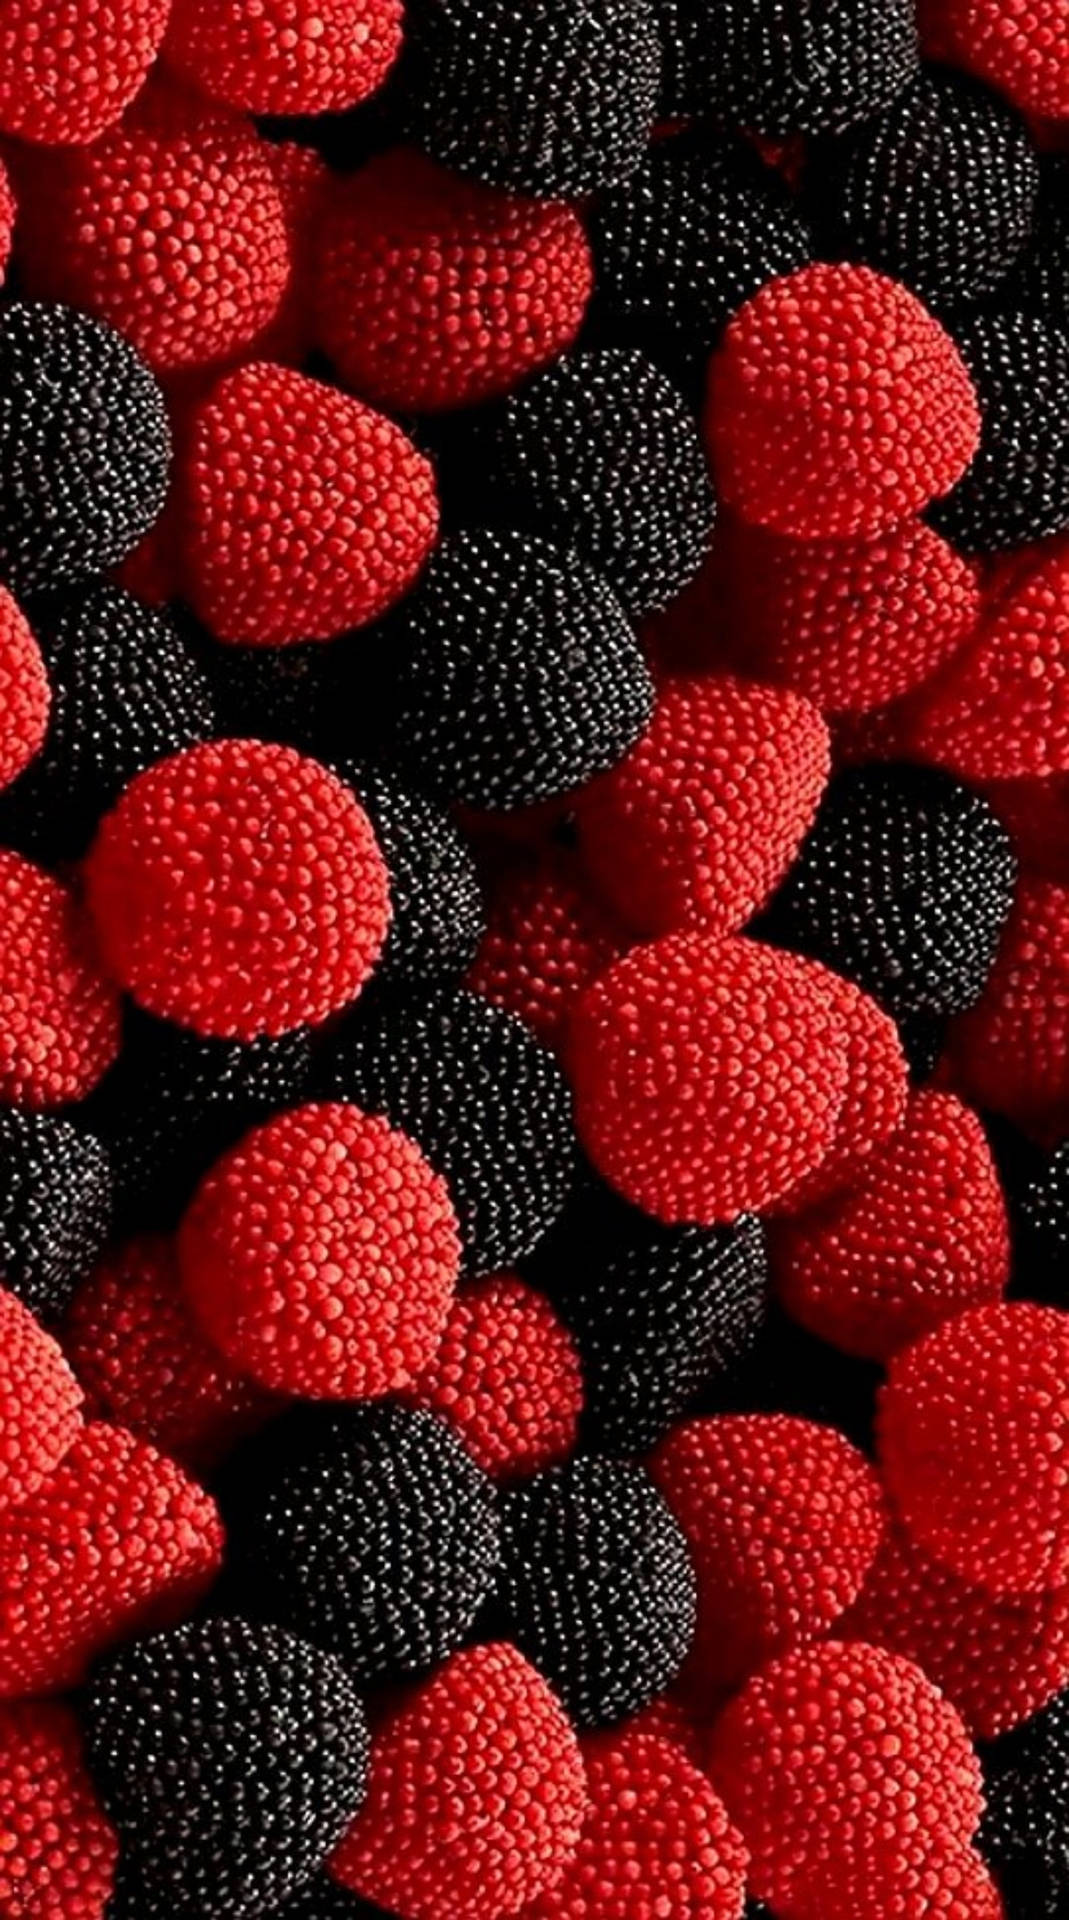 Raspberry Fruits 8k Phone